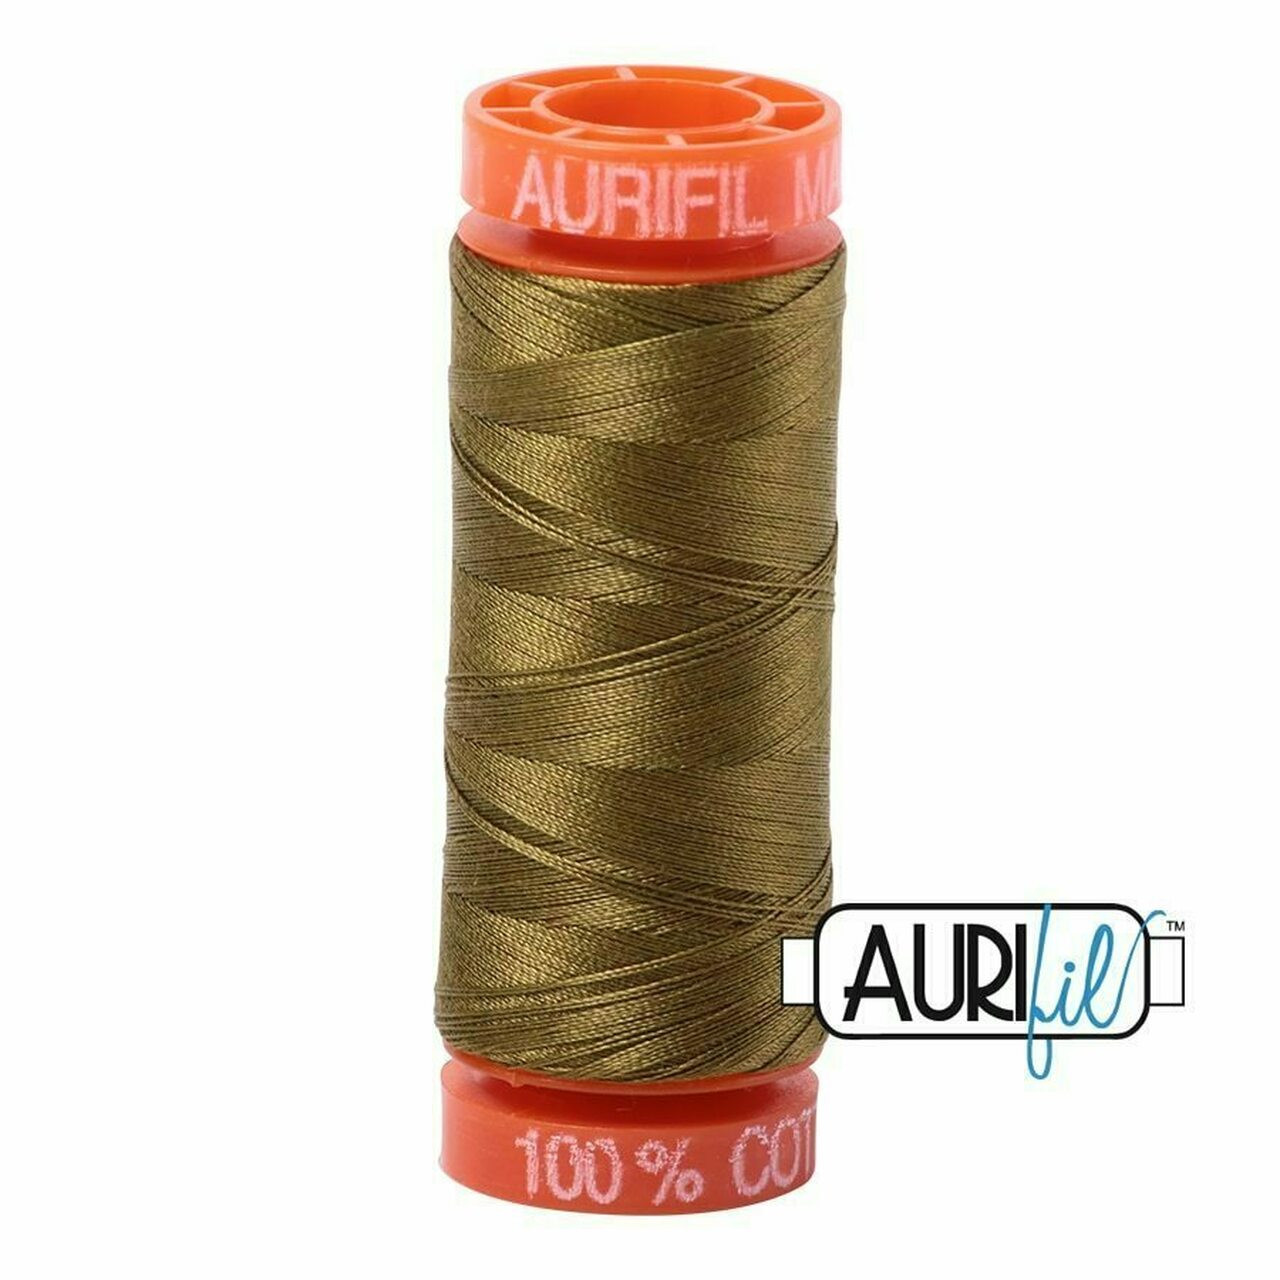 Aurifil 2910 - Medium Olive